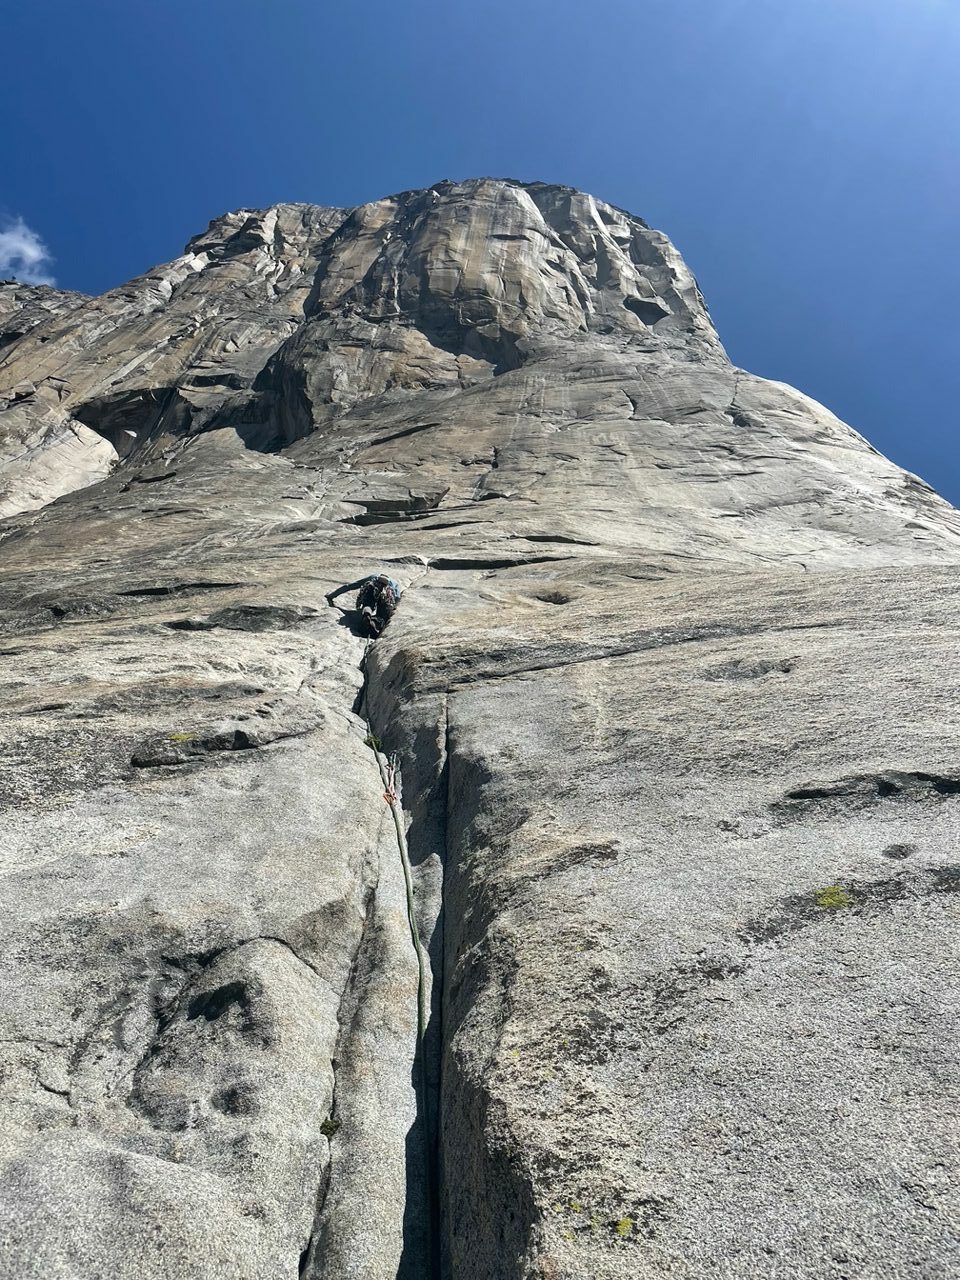 A climber on Freeblast, El Capitan. Photo: Van Leuven